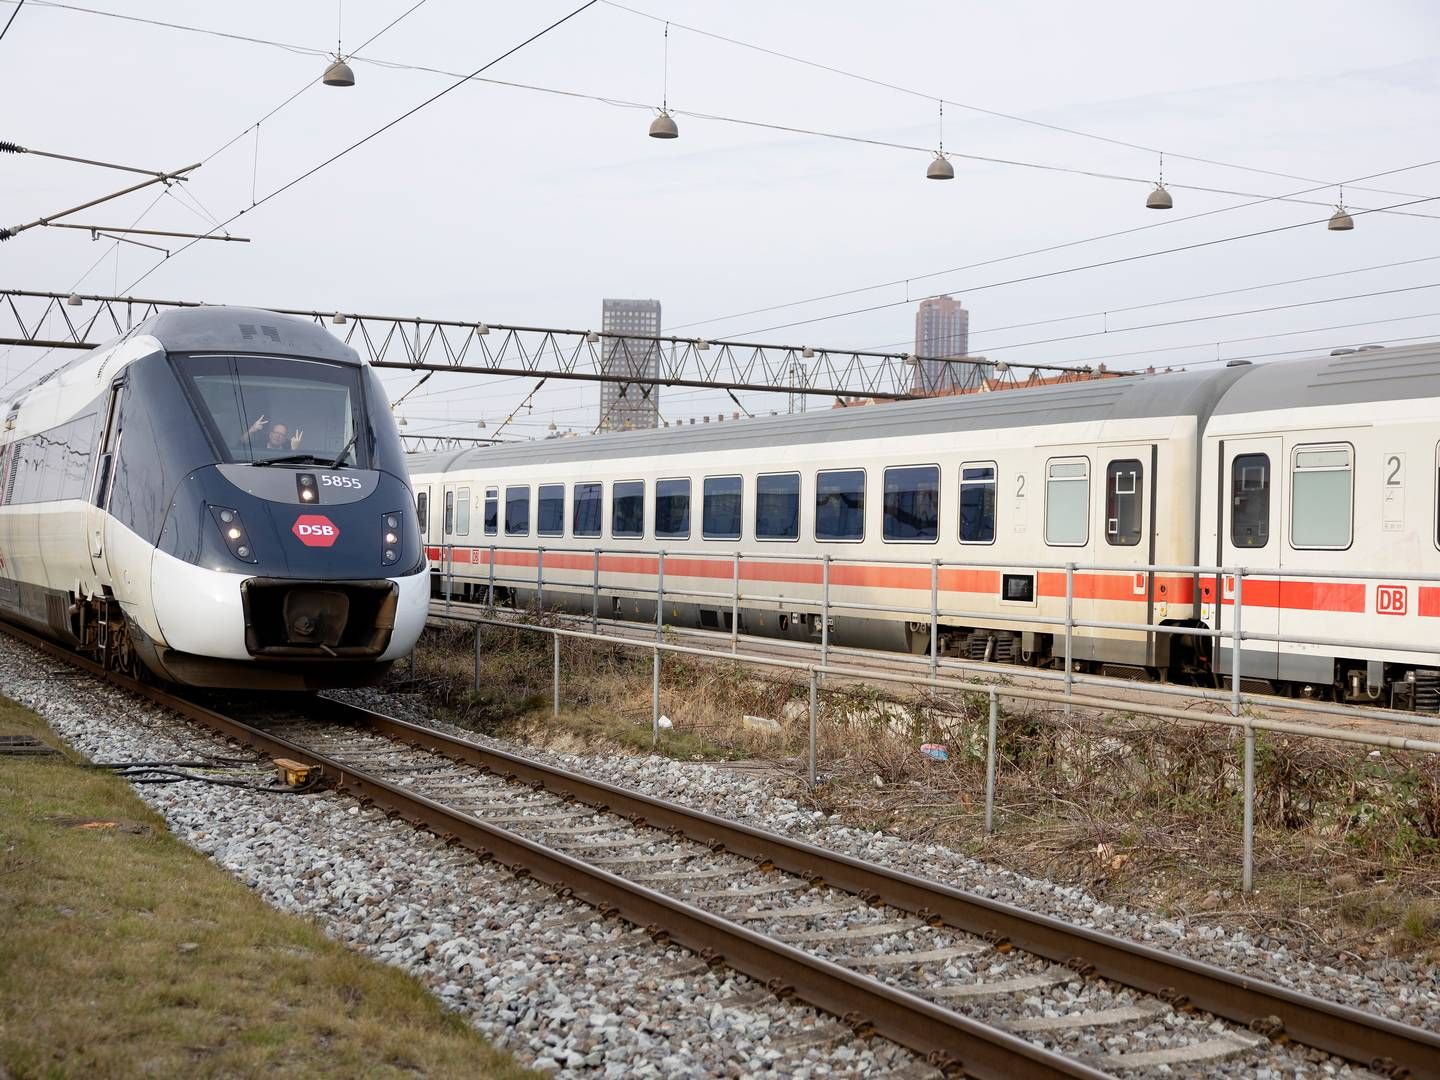 Fremtidens DSB-tog kan få flere ledige sæder som følge af fortsat faldende passagertal, forventer DTU-chefkonsulent. | Foto: Thomas Borberg/Ritzau Scanpix